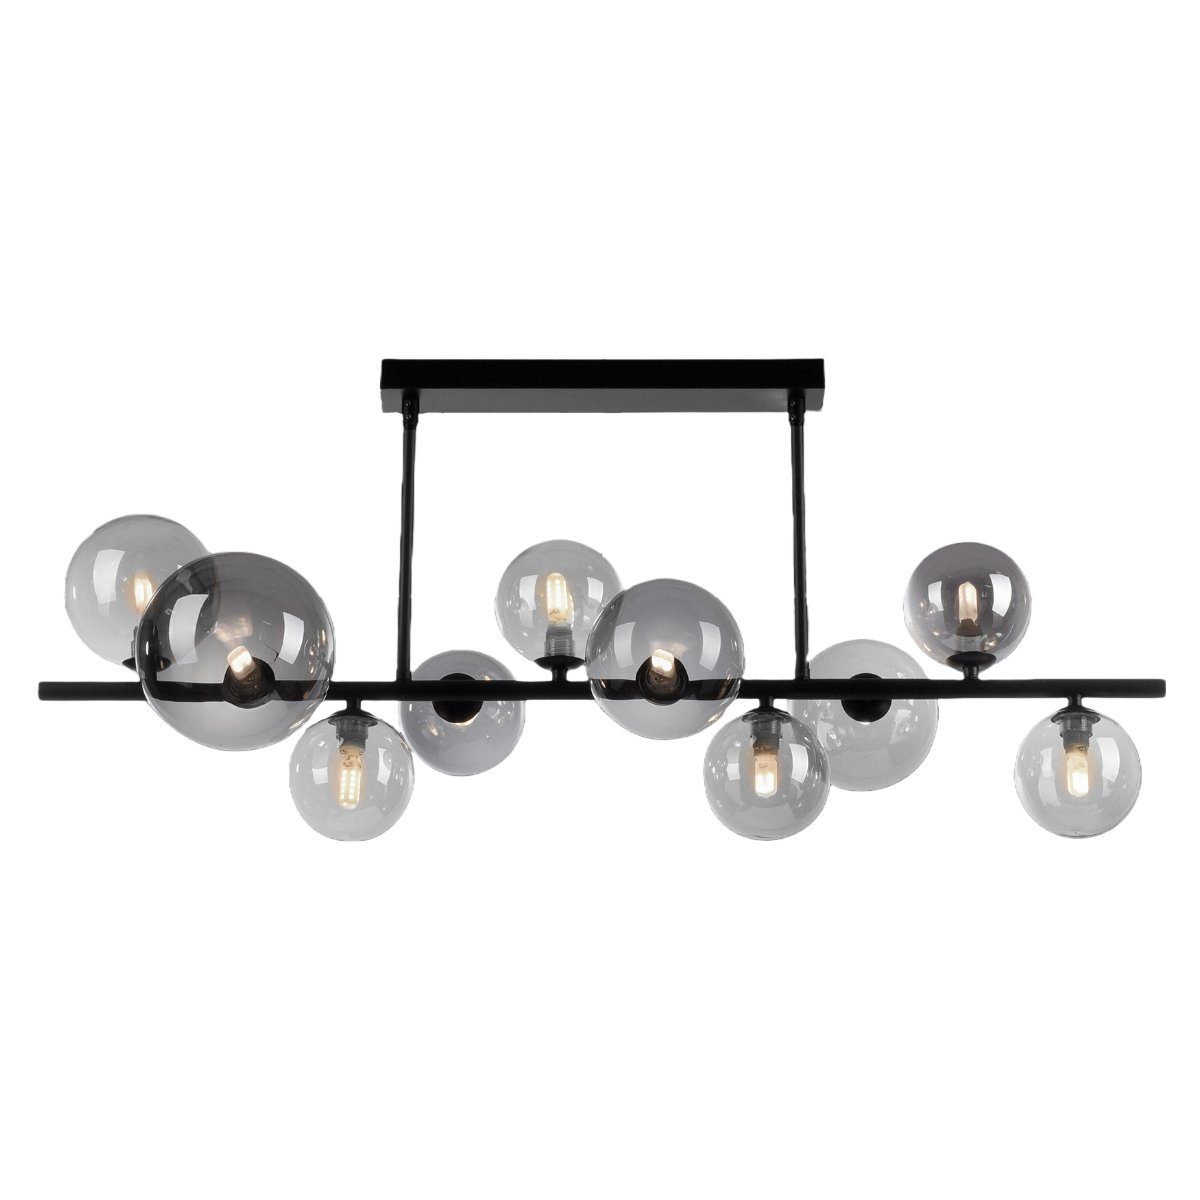 Paul Neuhaus Deckenleuchten Popsicle, inkl. Leuchtmittel, 3000, 10 Rauchglasschirme, 85 cm Länge, atmosphärisches Licht, G9 | Deckenlampen